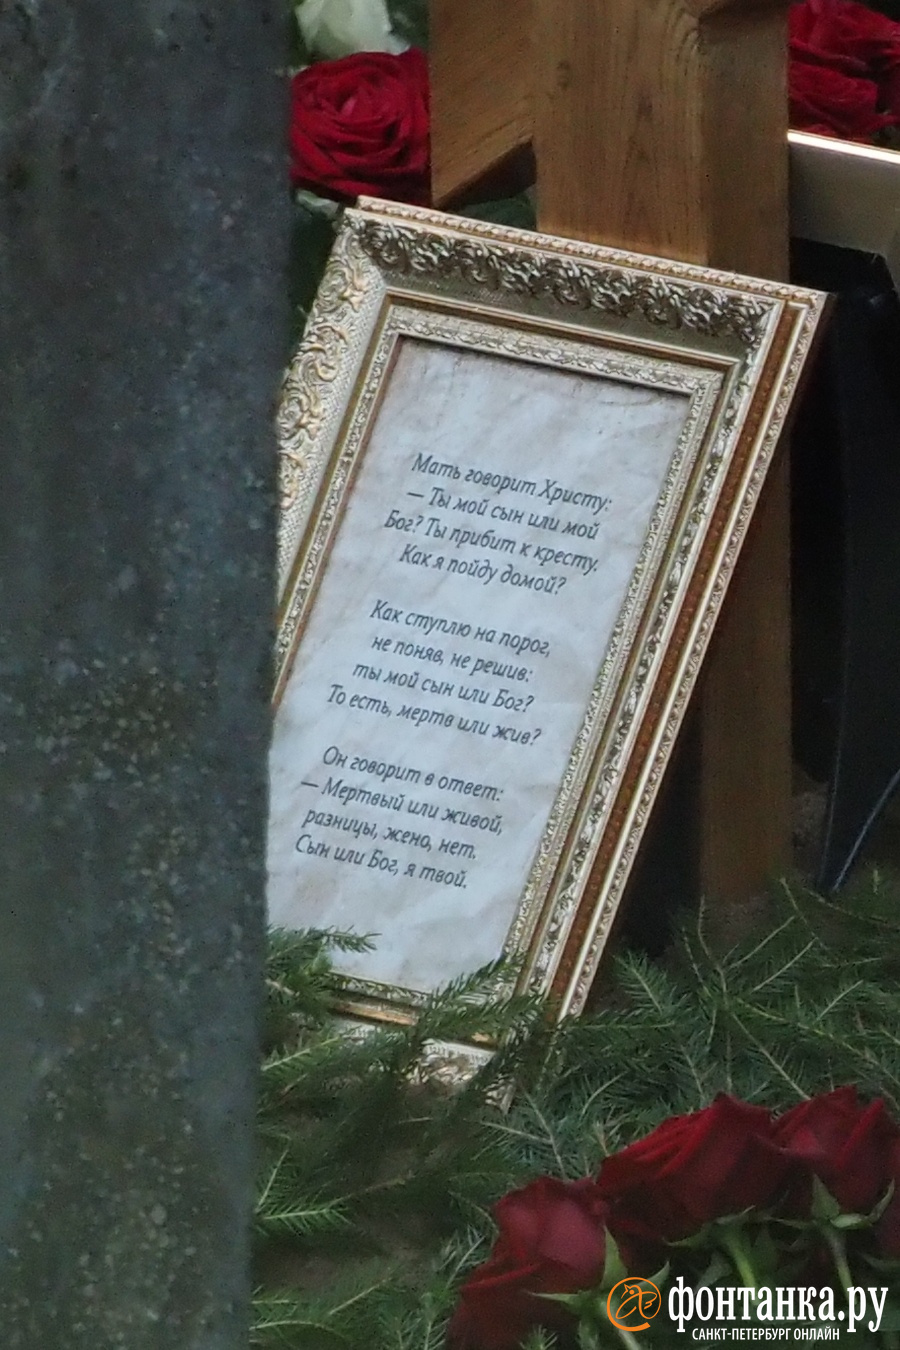 Стихи Бродского на могиле Пригожина